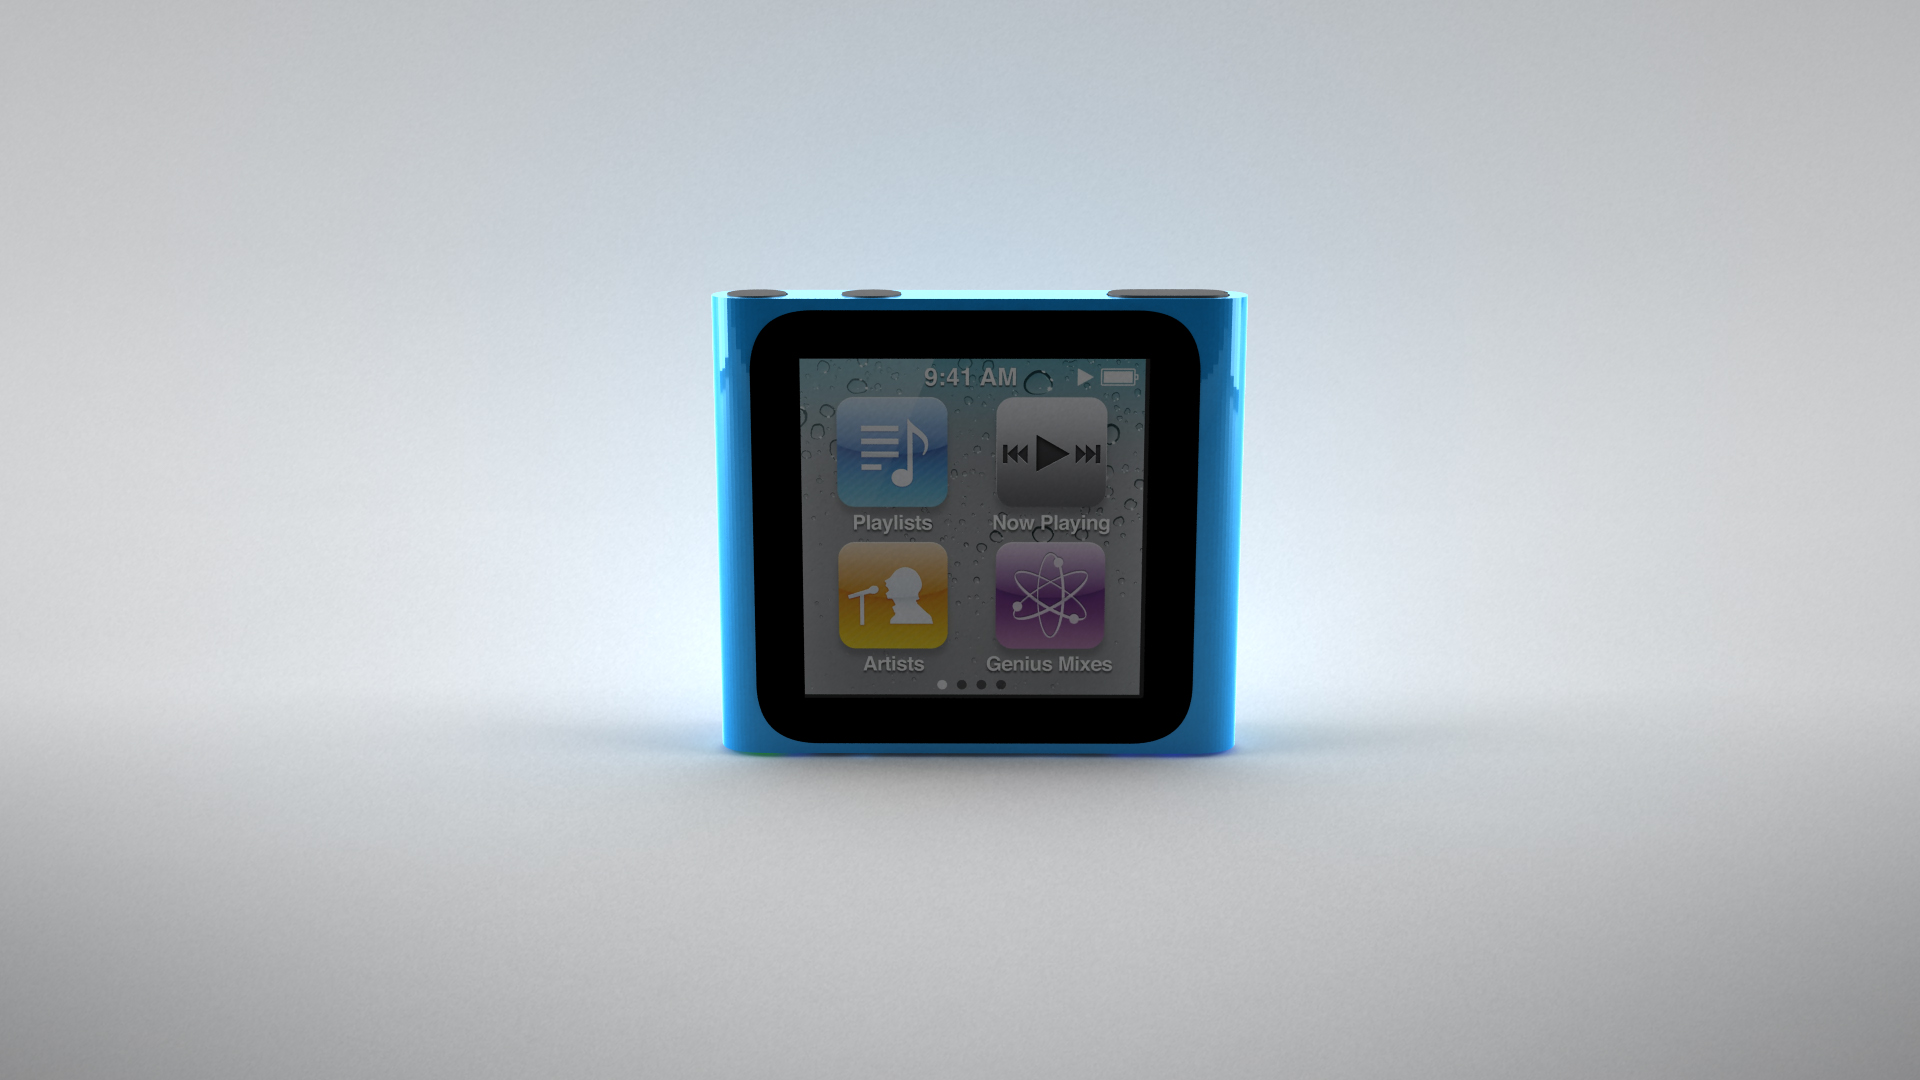 Визуализация плеера Ipod nano 6g